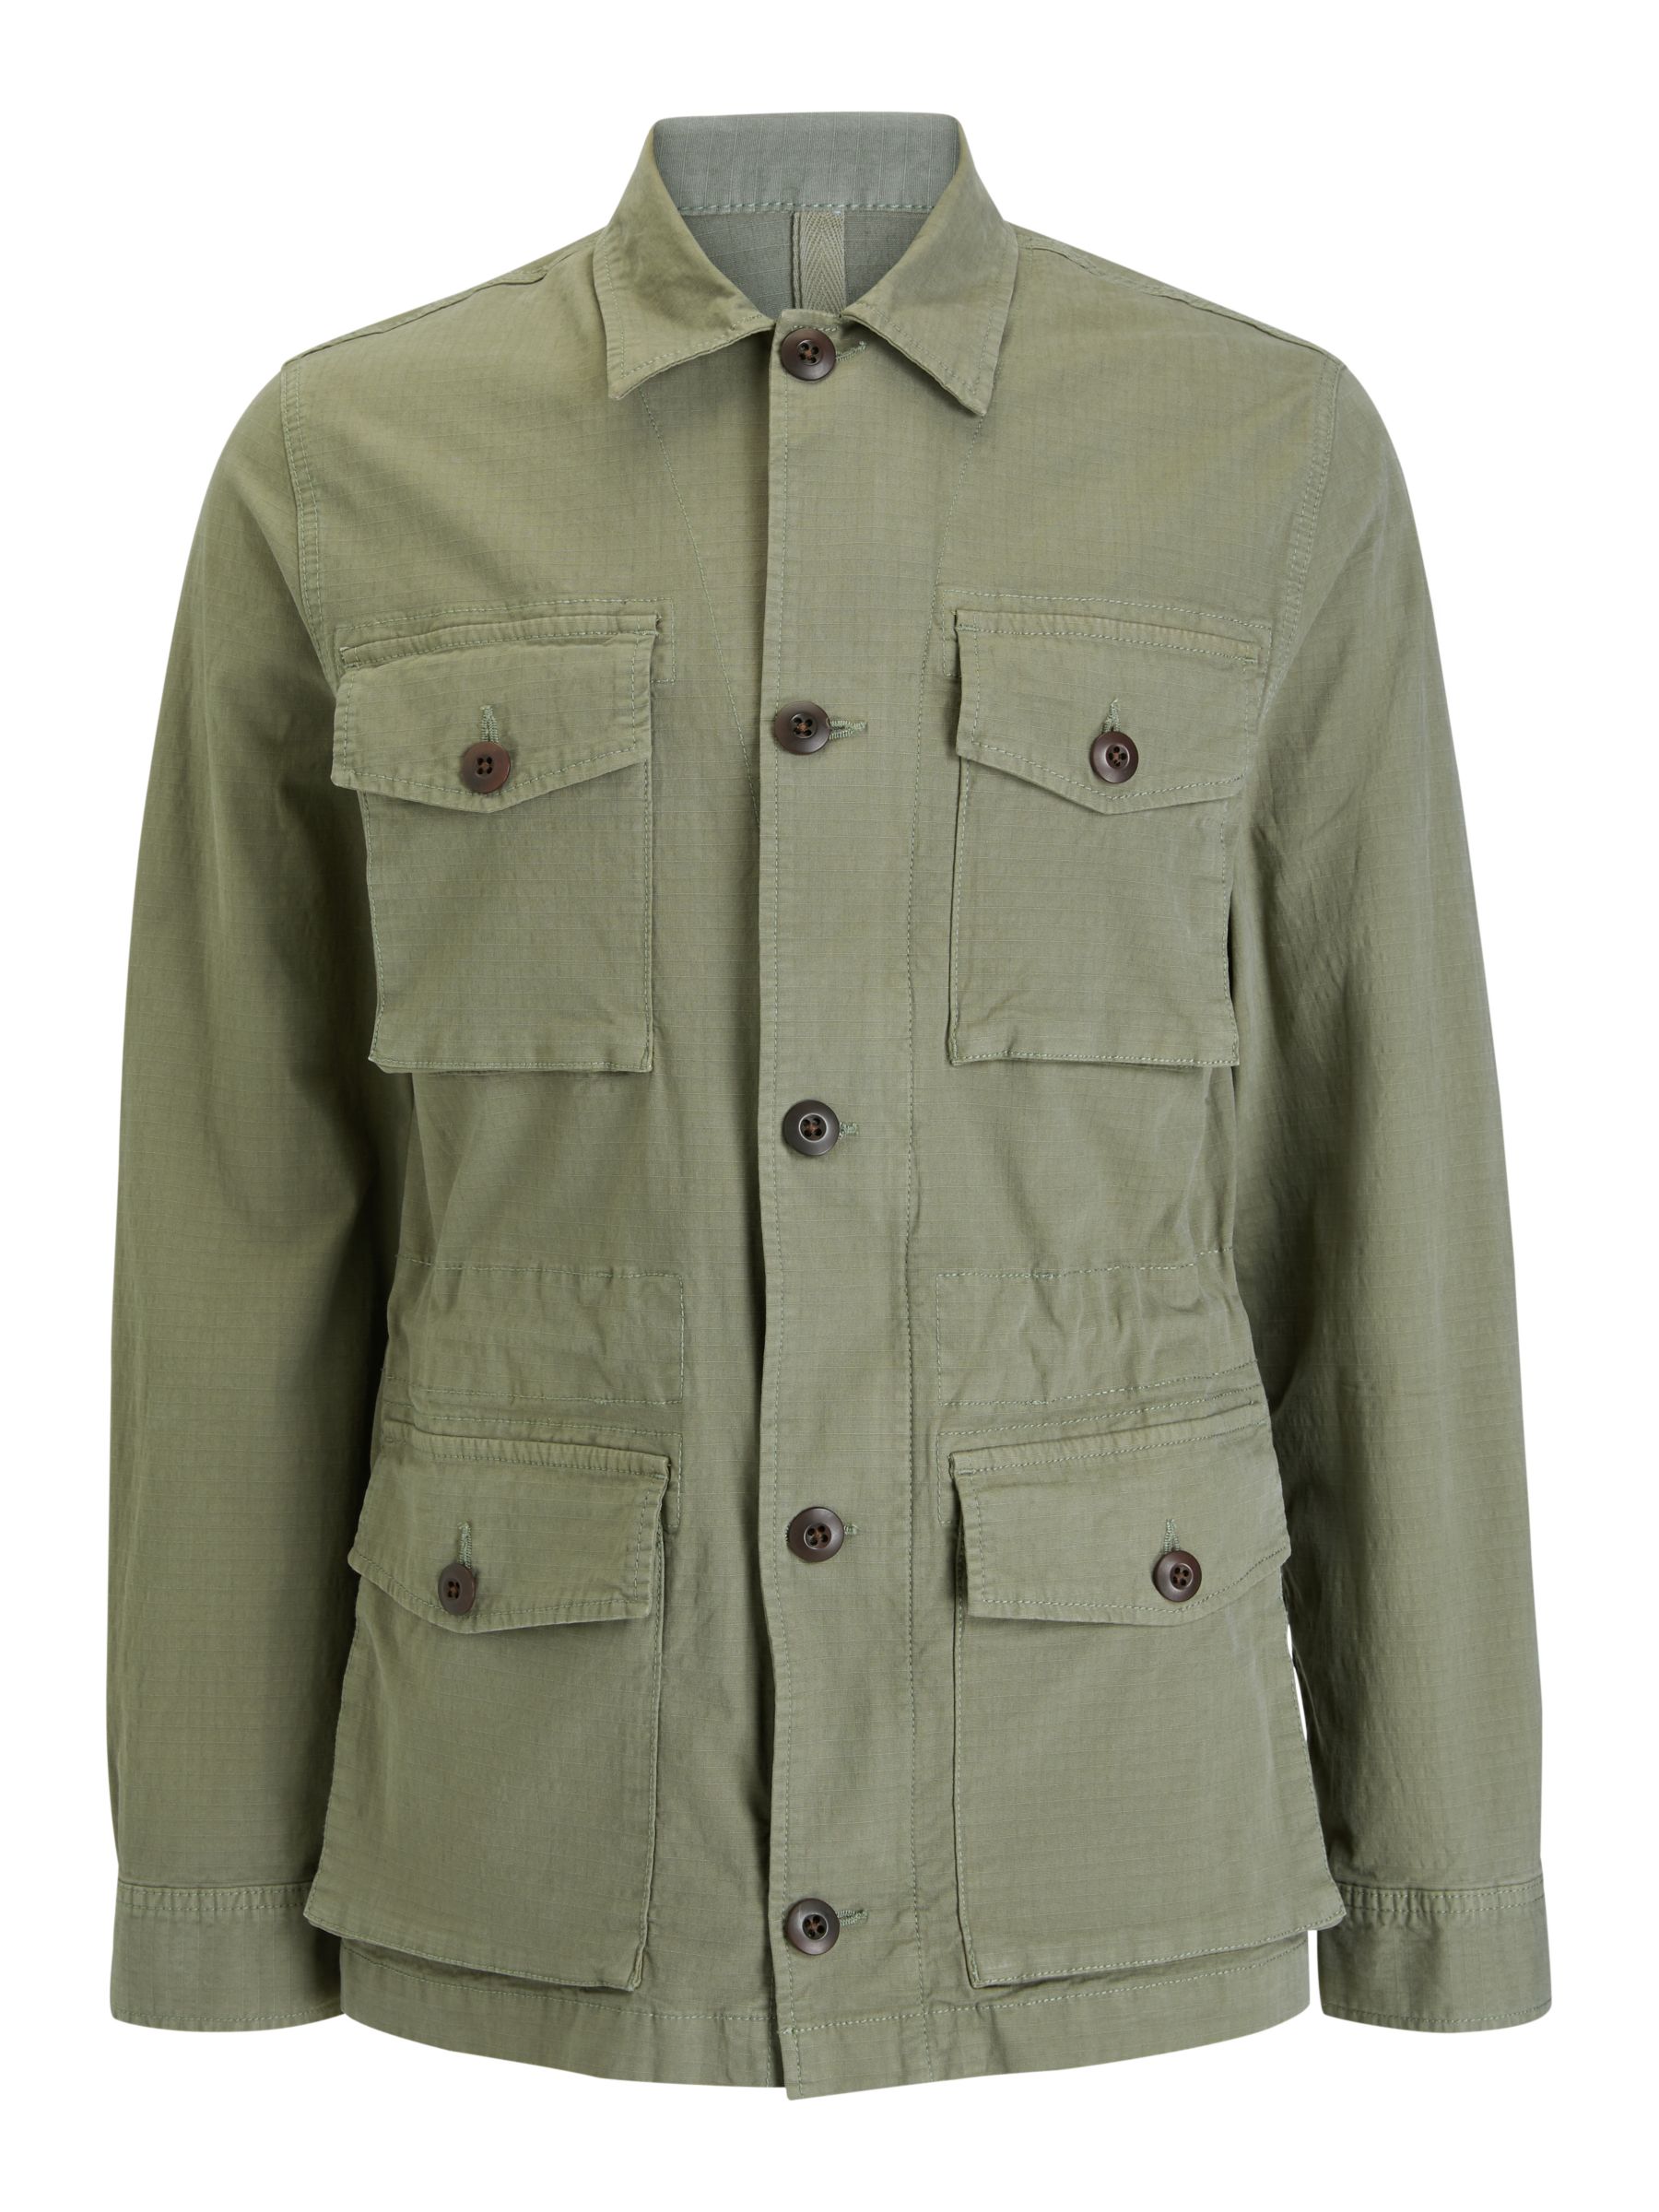 John Lewis & Partners Garment Dye Ripstop M-65 Field Jacket, Olive, S